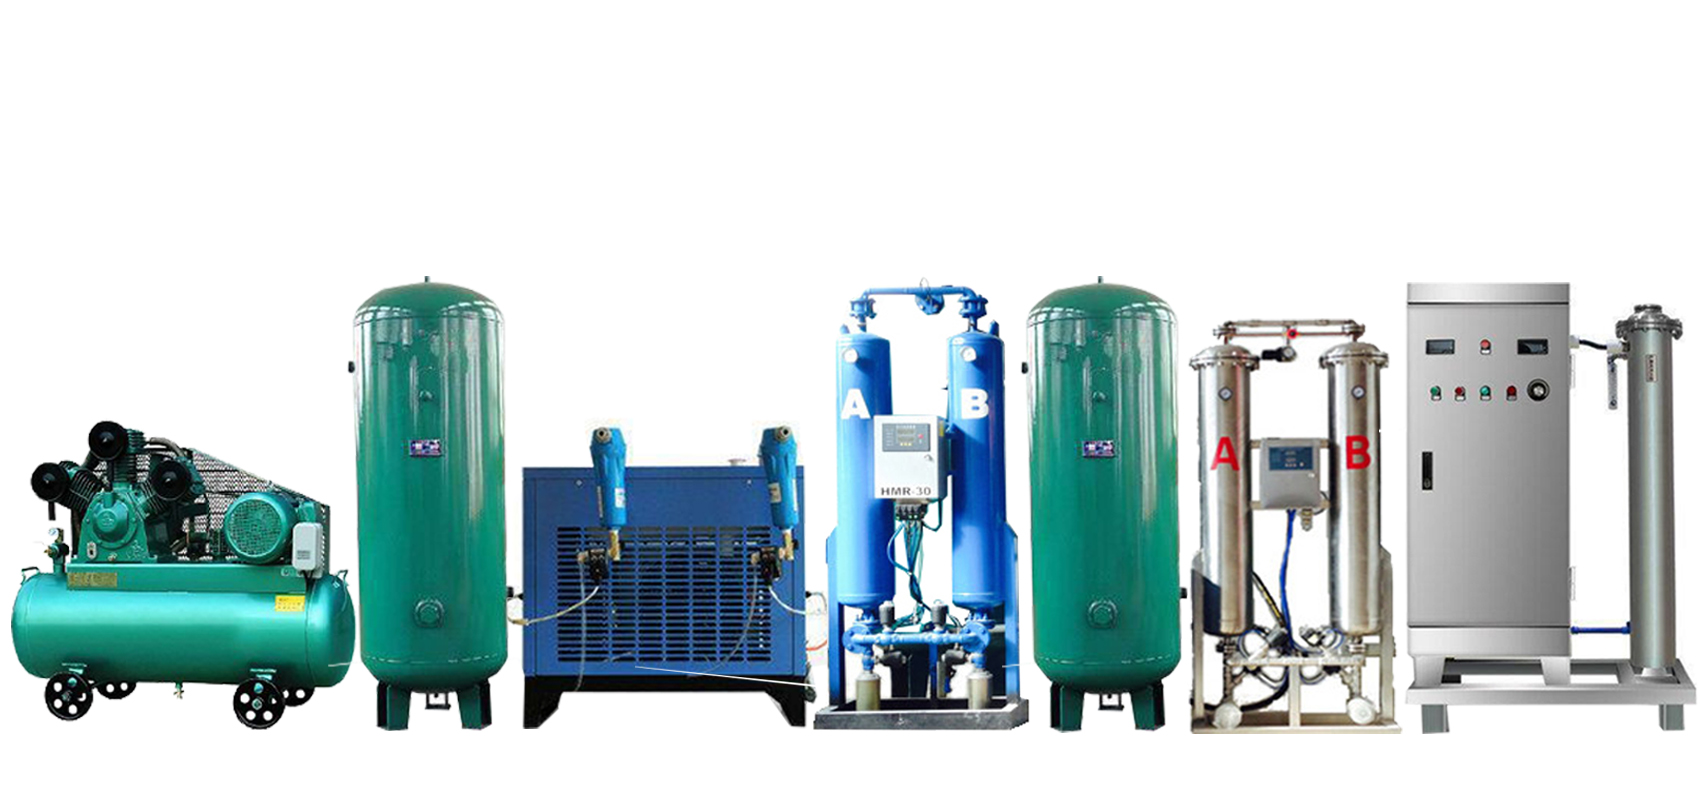 YT-018-200A臭氧发生器 YT-018-200A臭氧发生器是哪个厂家